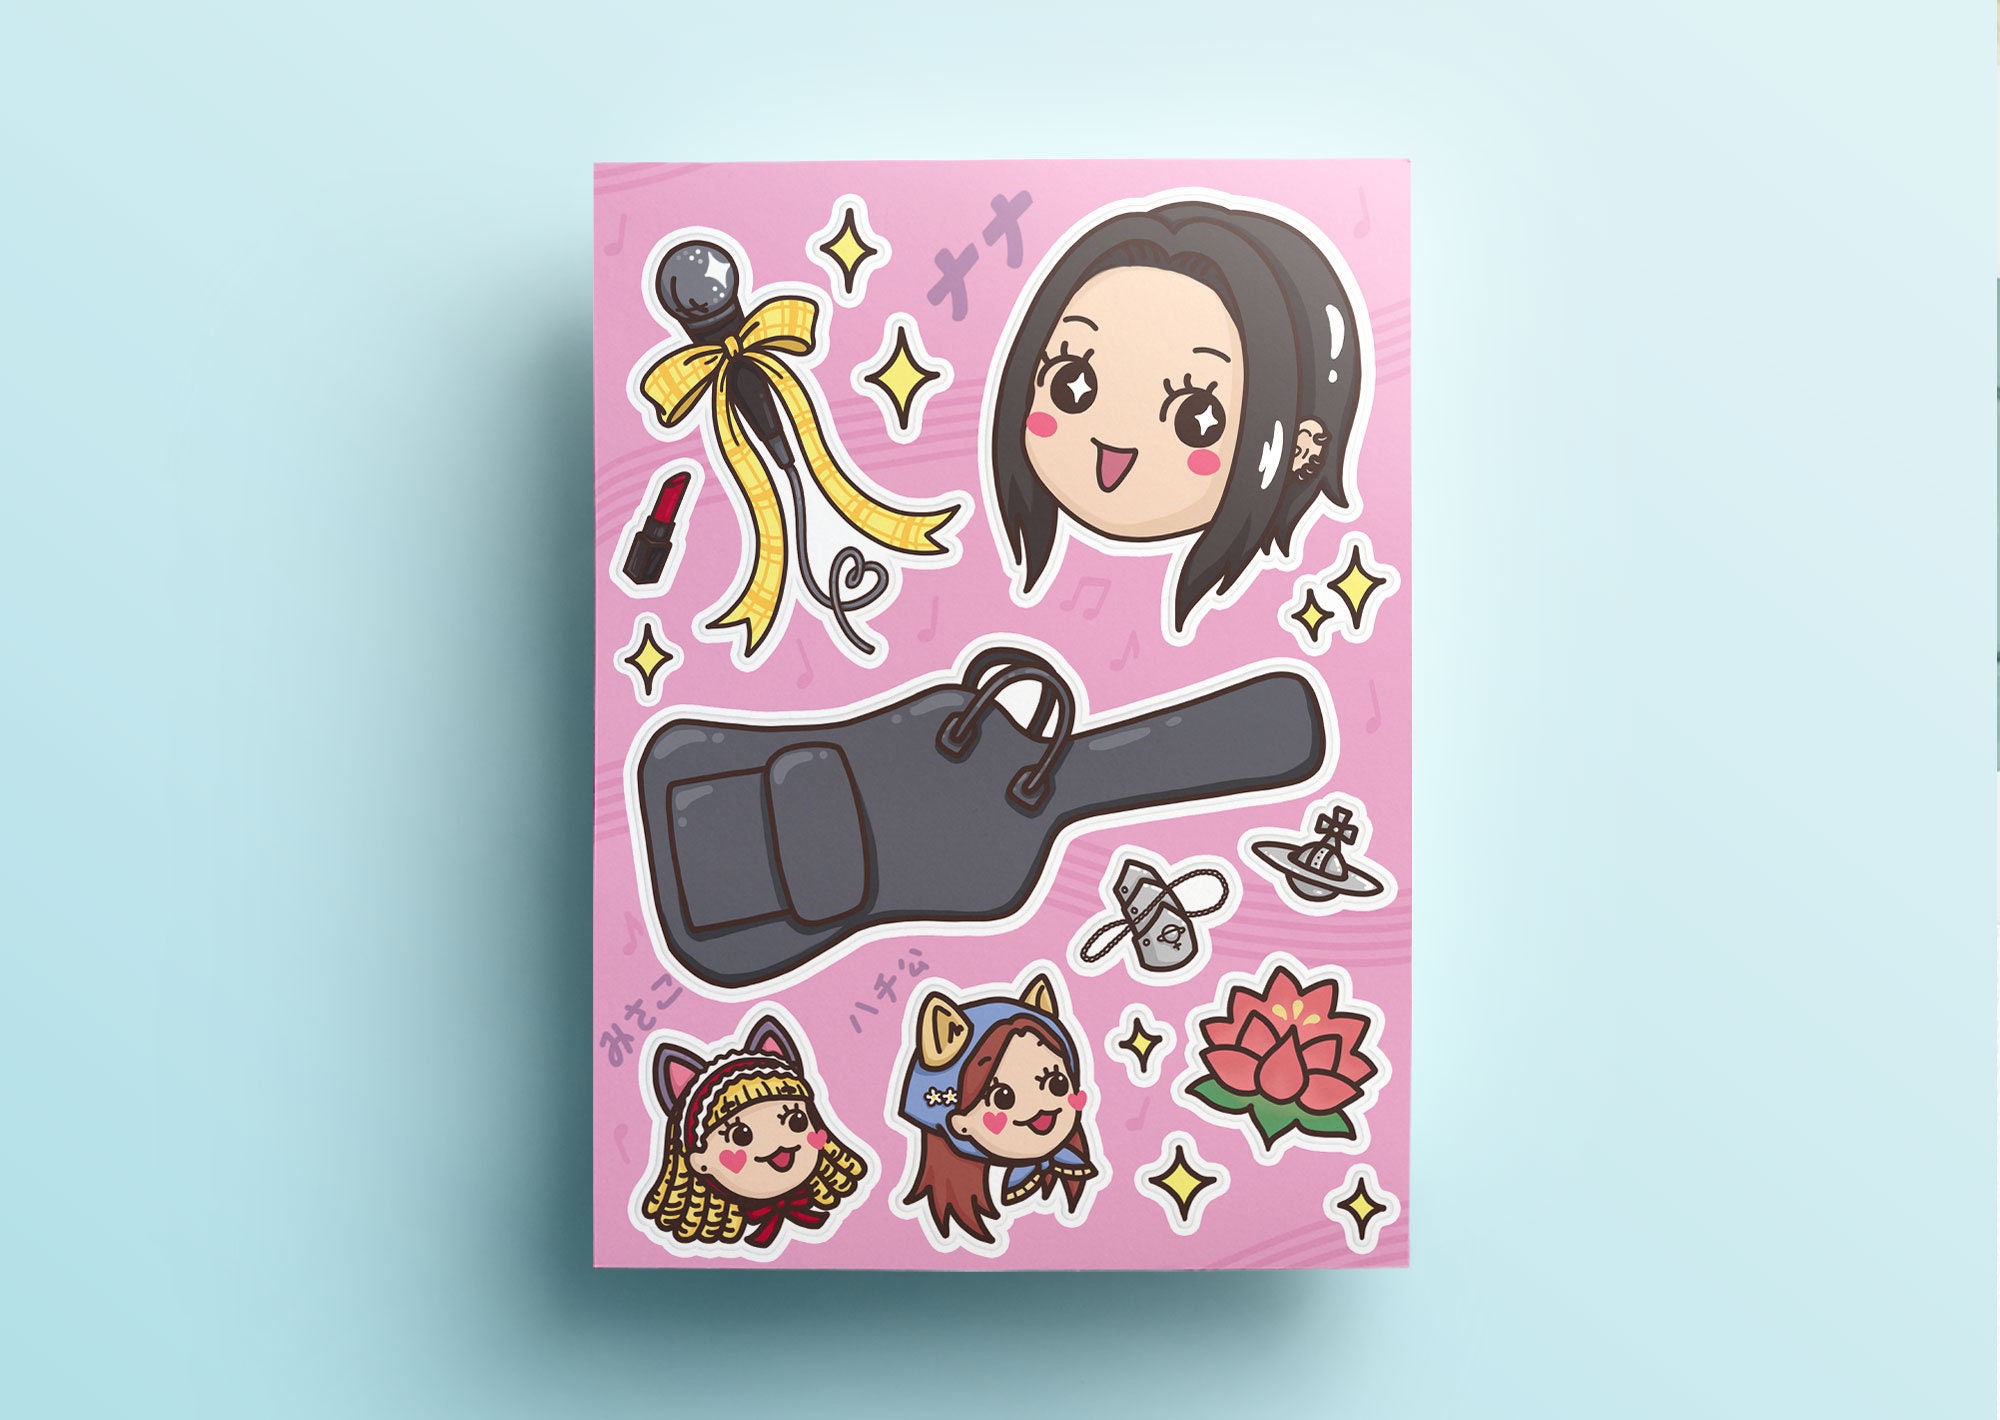 Sakamoto, Sakamoto desu ga. Sticker Greeting Card for Sale by